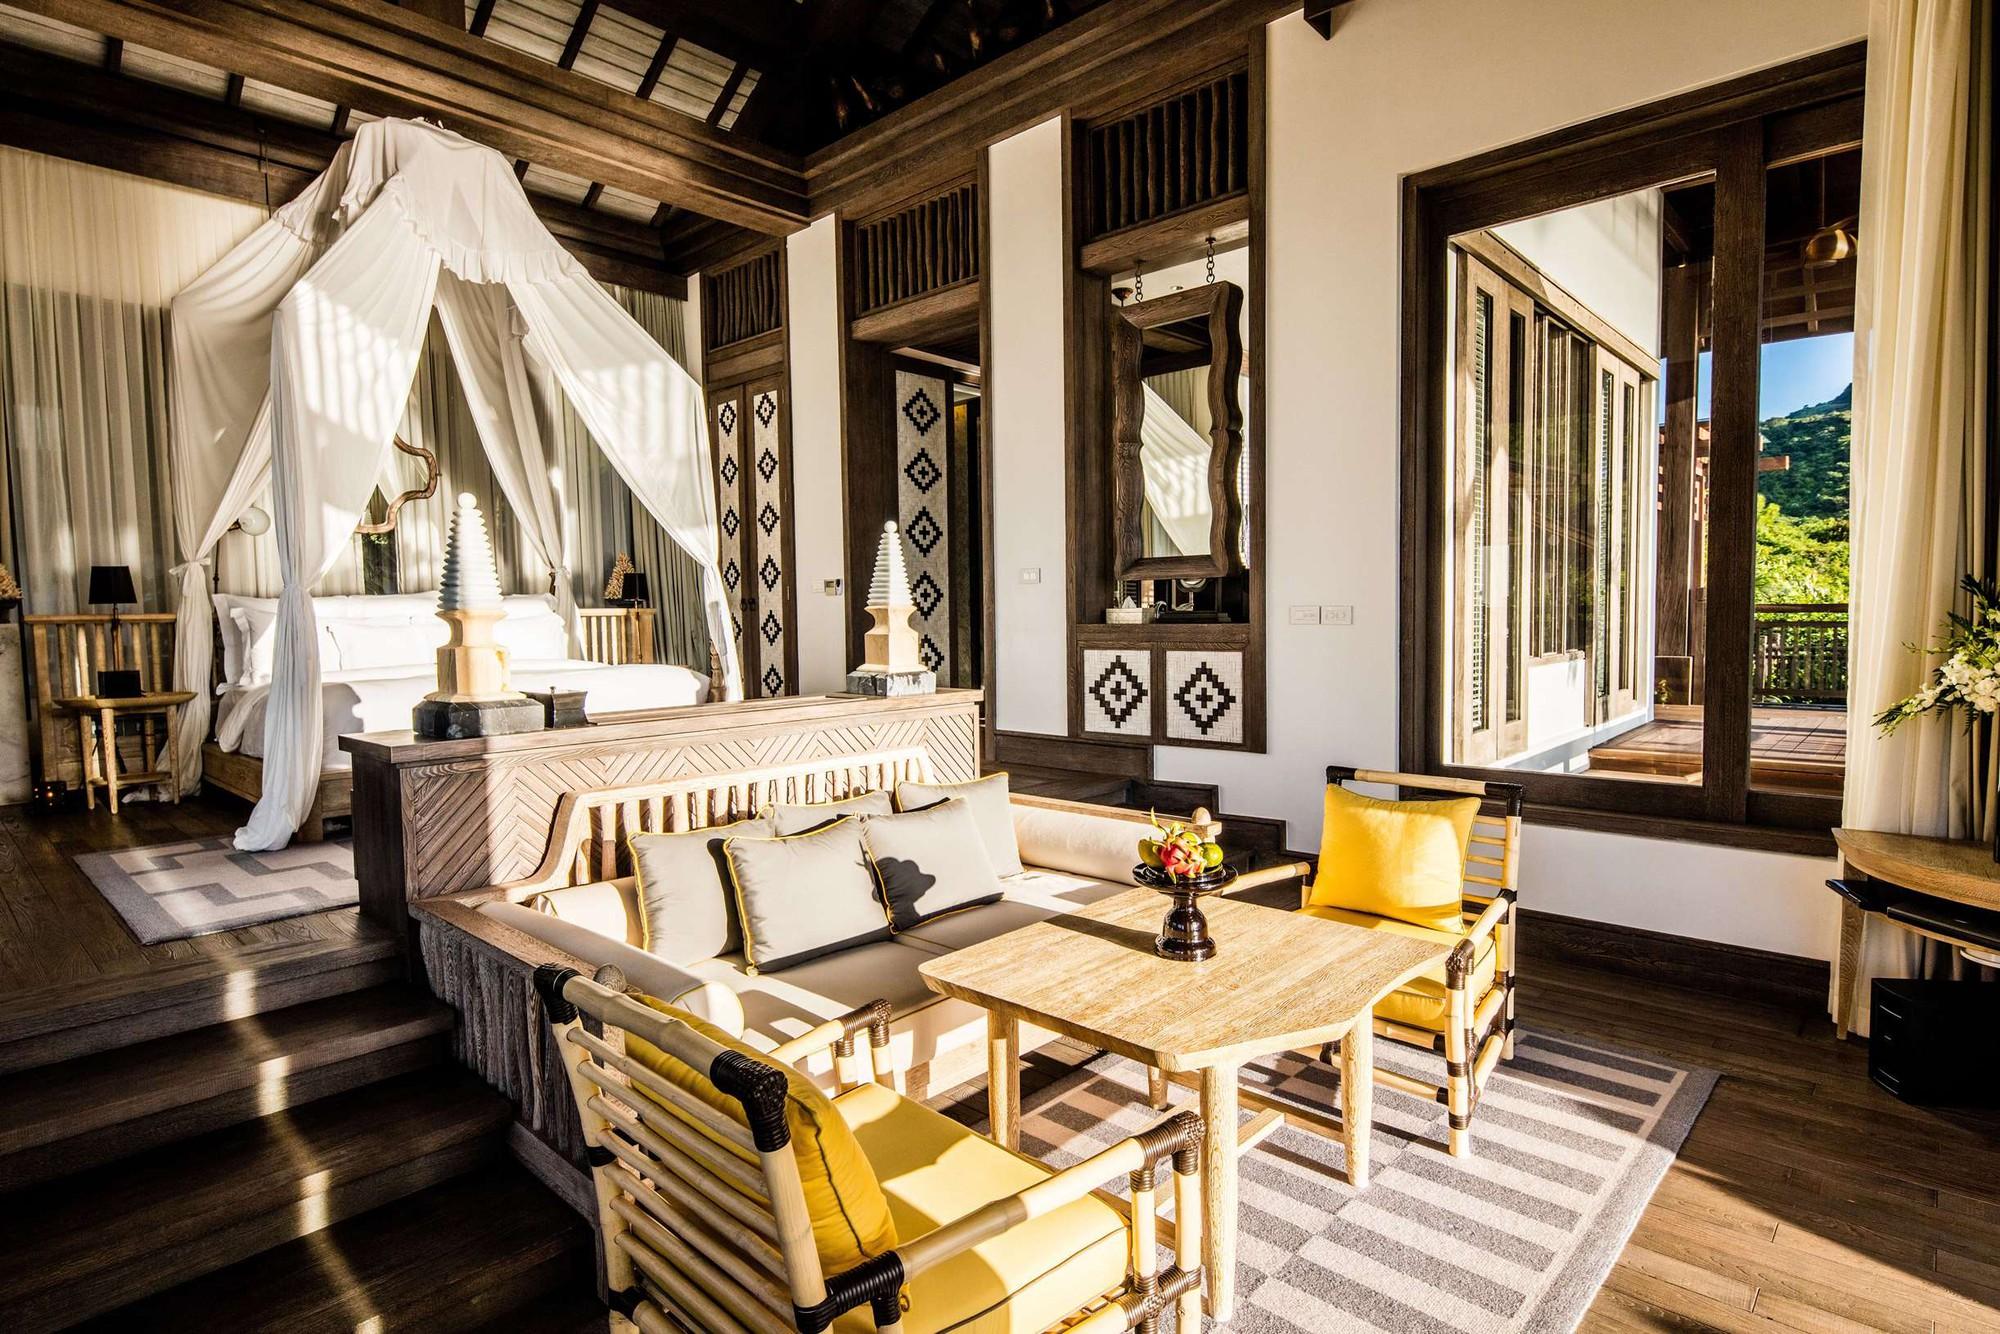 Báo Mỹ viết về khu resort hàng đầu thế giới tại Đà Nẵng, nơi nghỉ ngơi của các nhà lãnh đạo APEC với giá phòng lên tới 70 triệu đồng/đêm-9